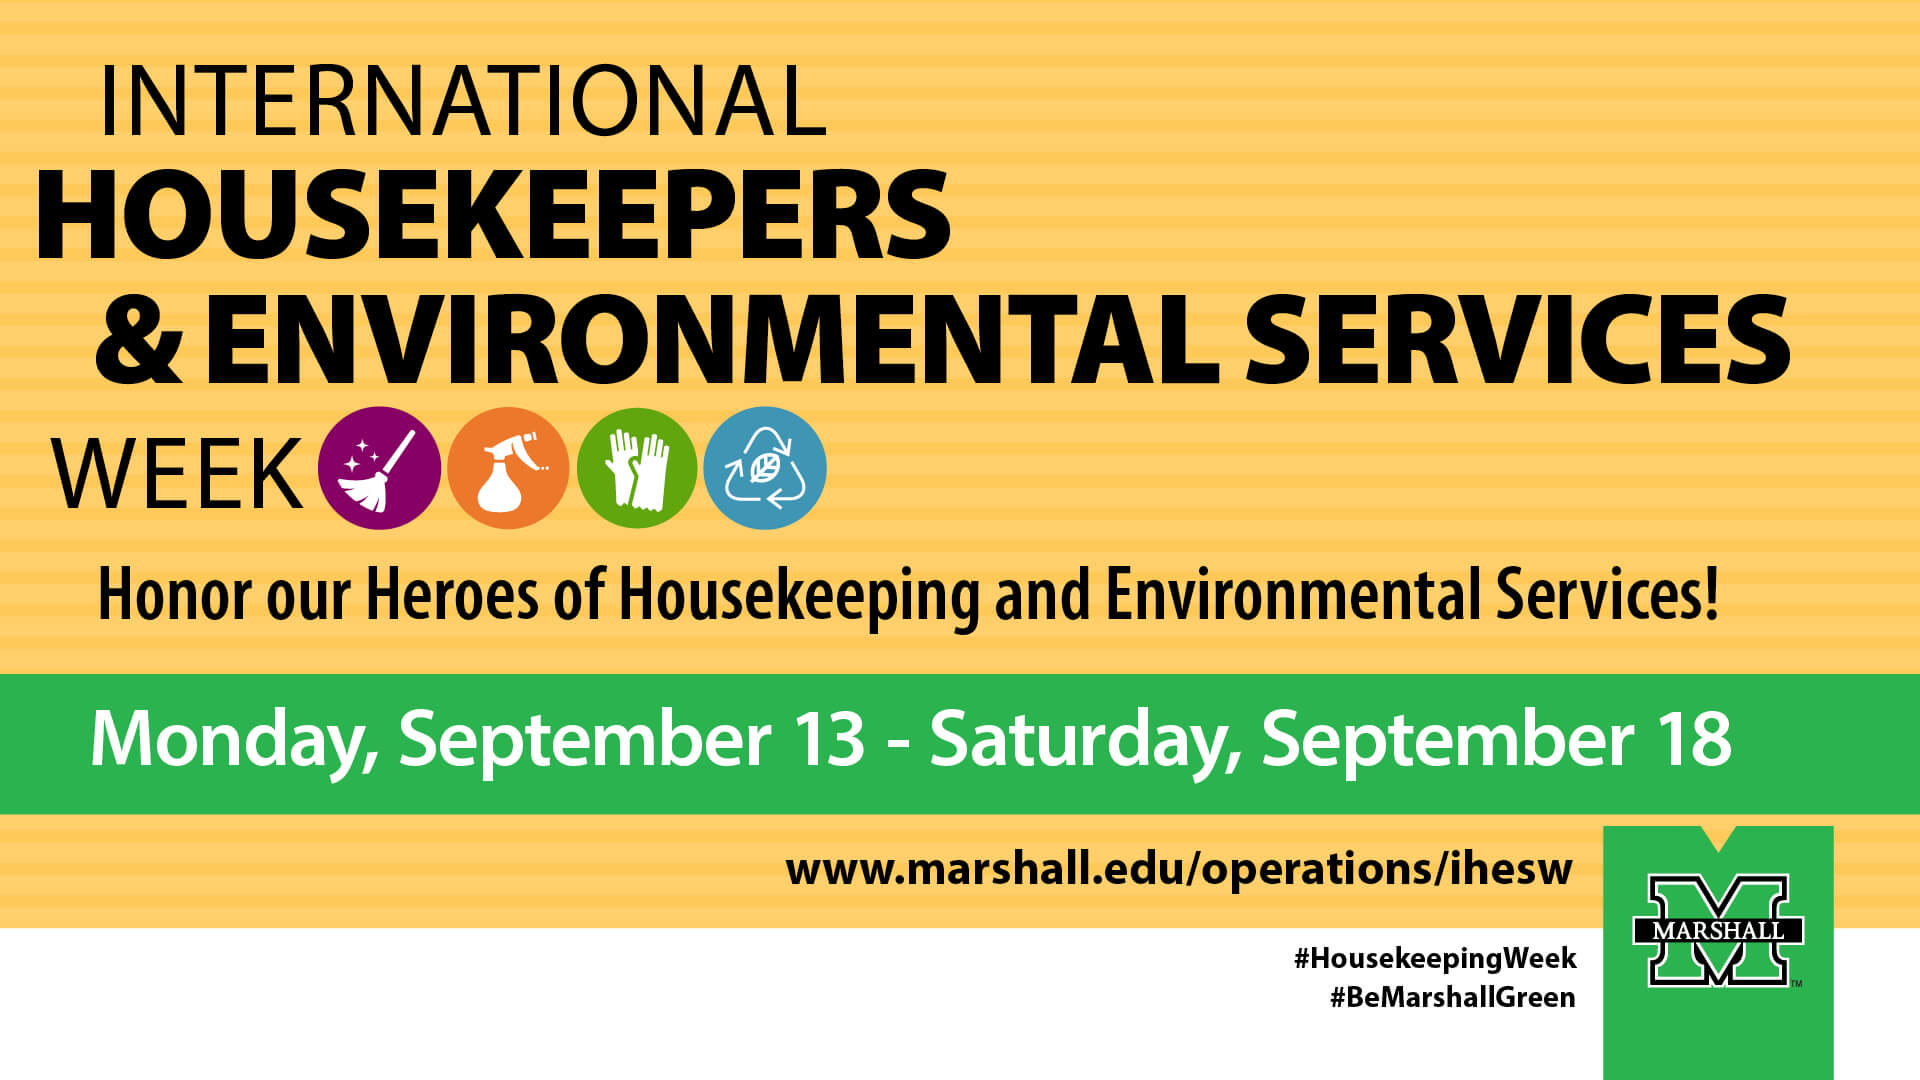 Heroes of International Housekeepers and Environmental Services Week